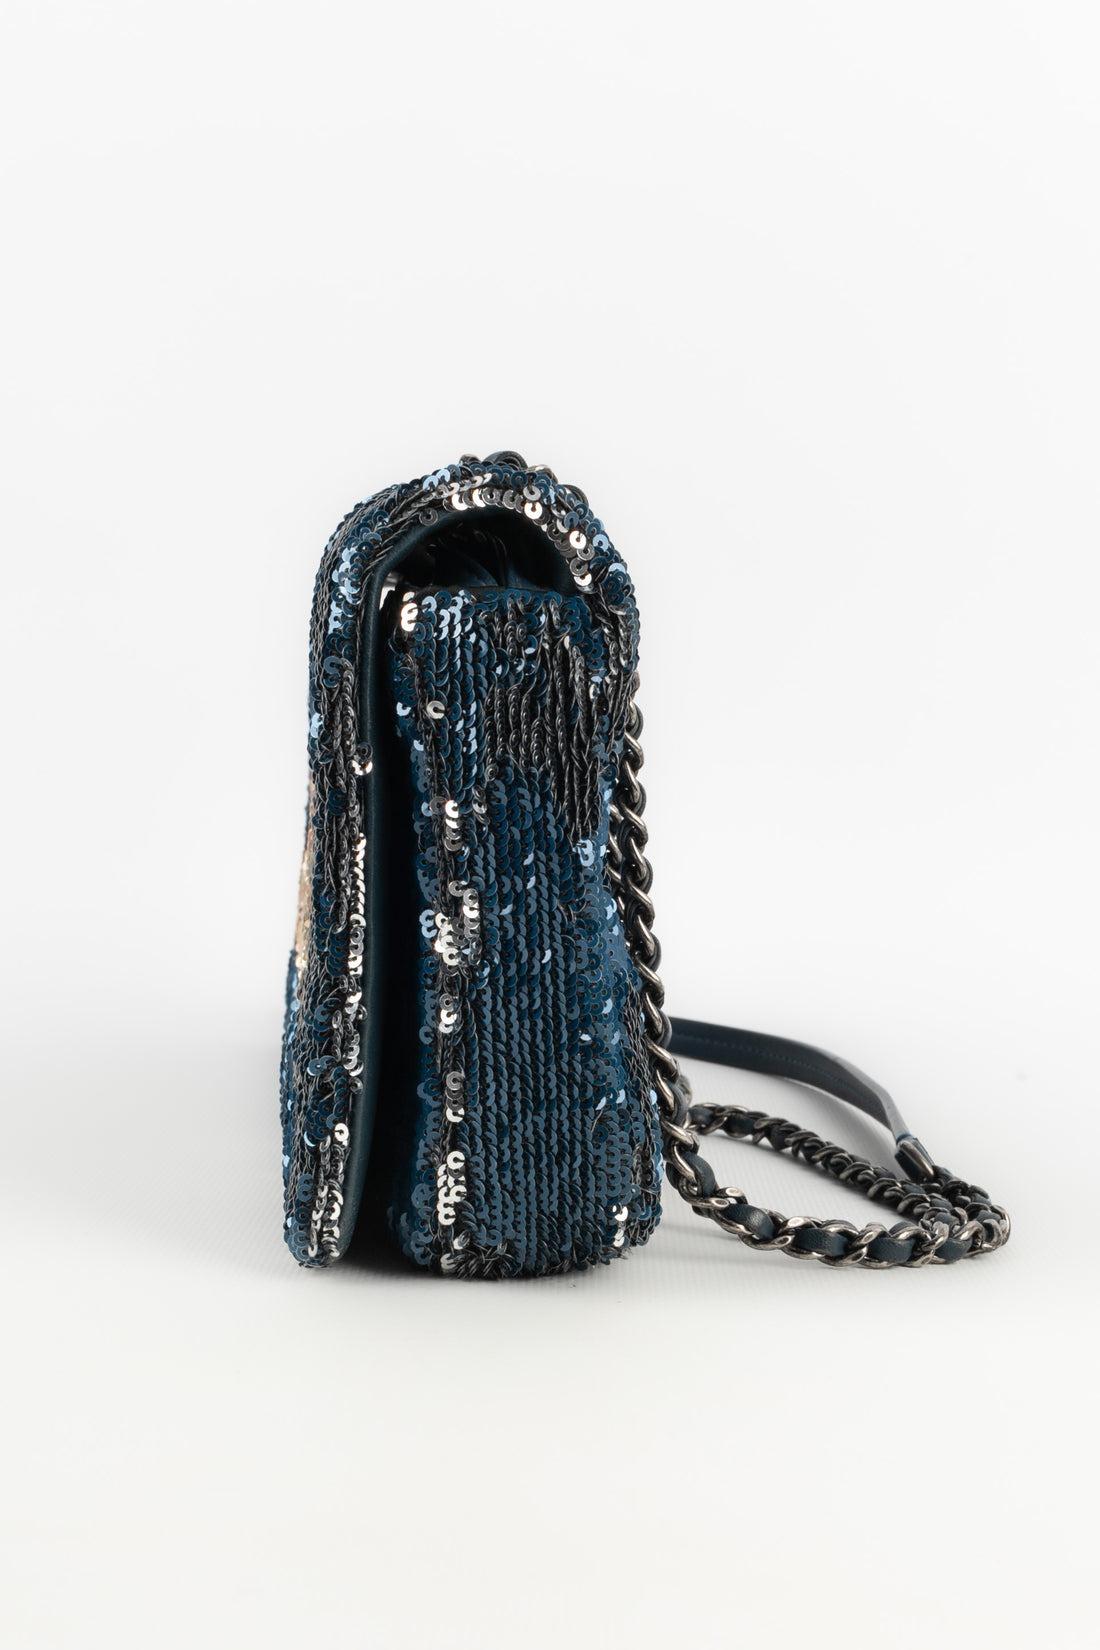 Chanel Blue Leather Sequinned Bag Paris-Cuba, 2018 For Sale 2